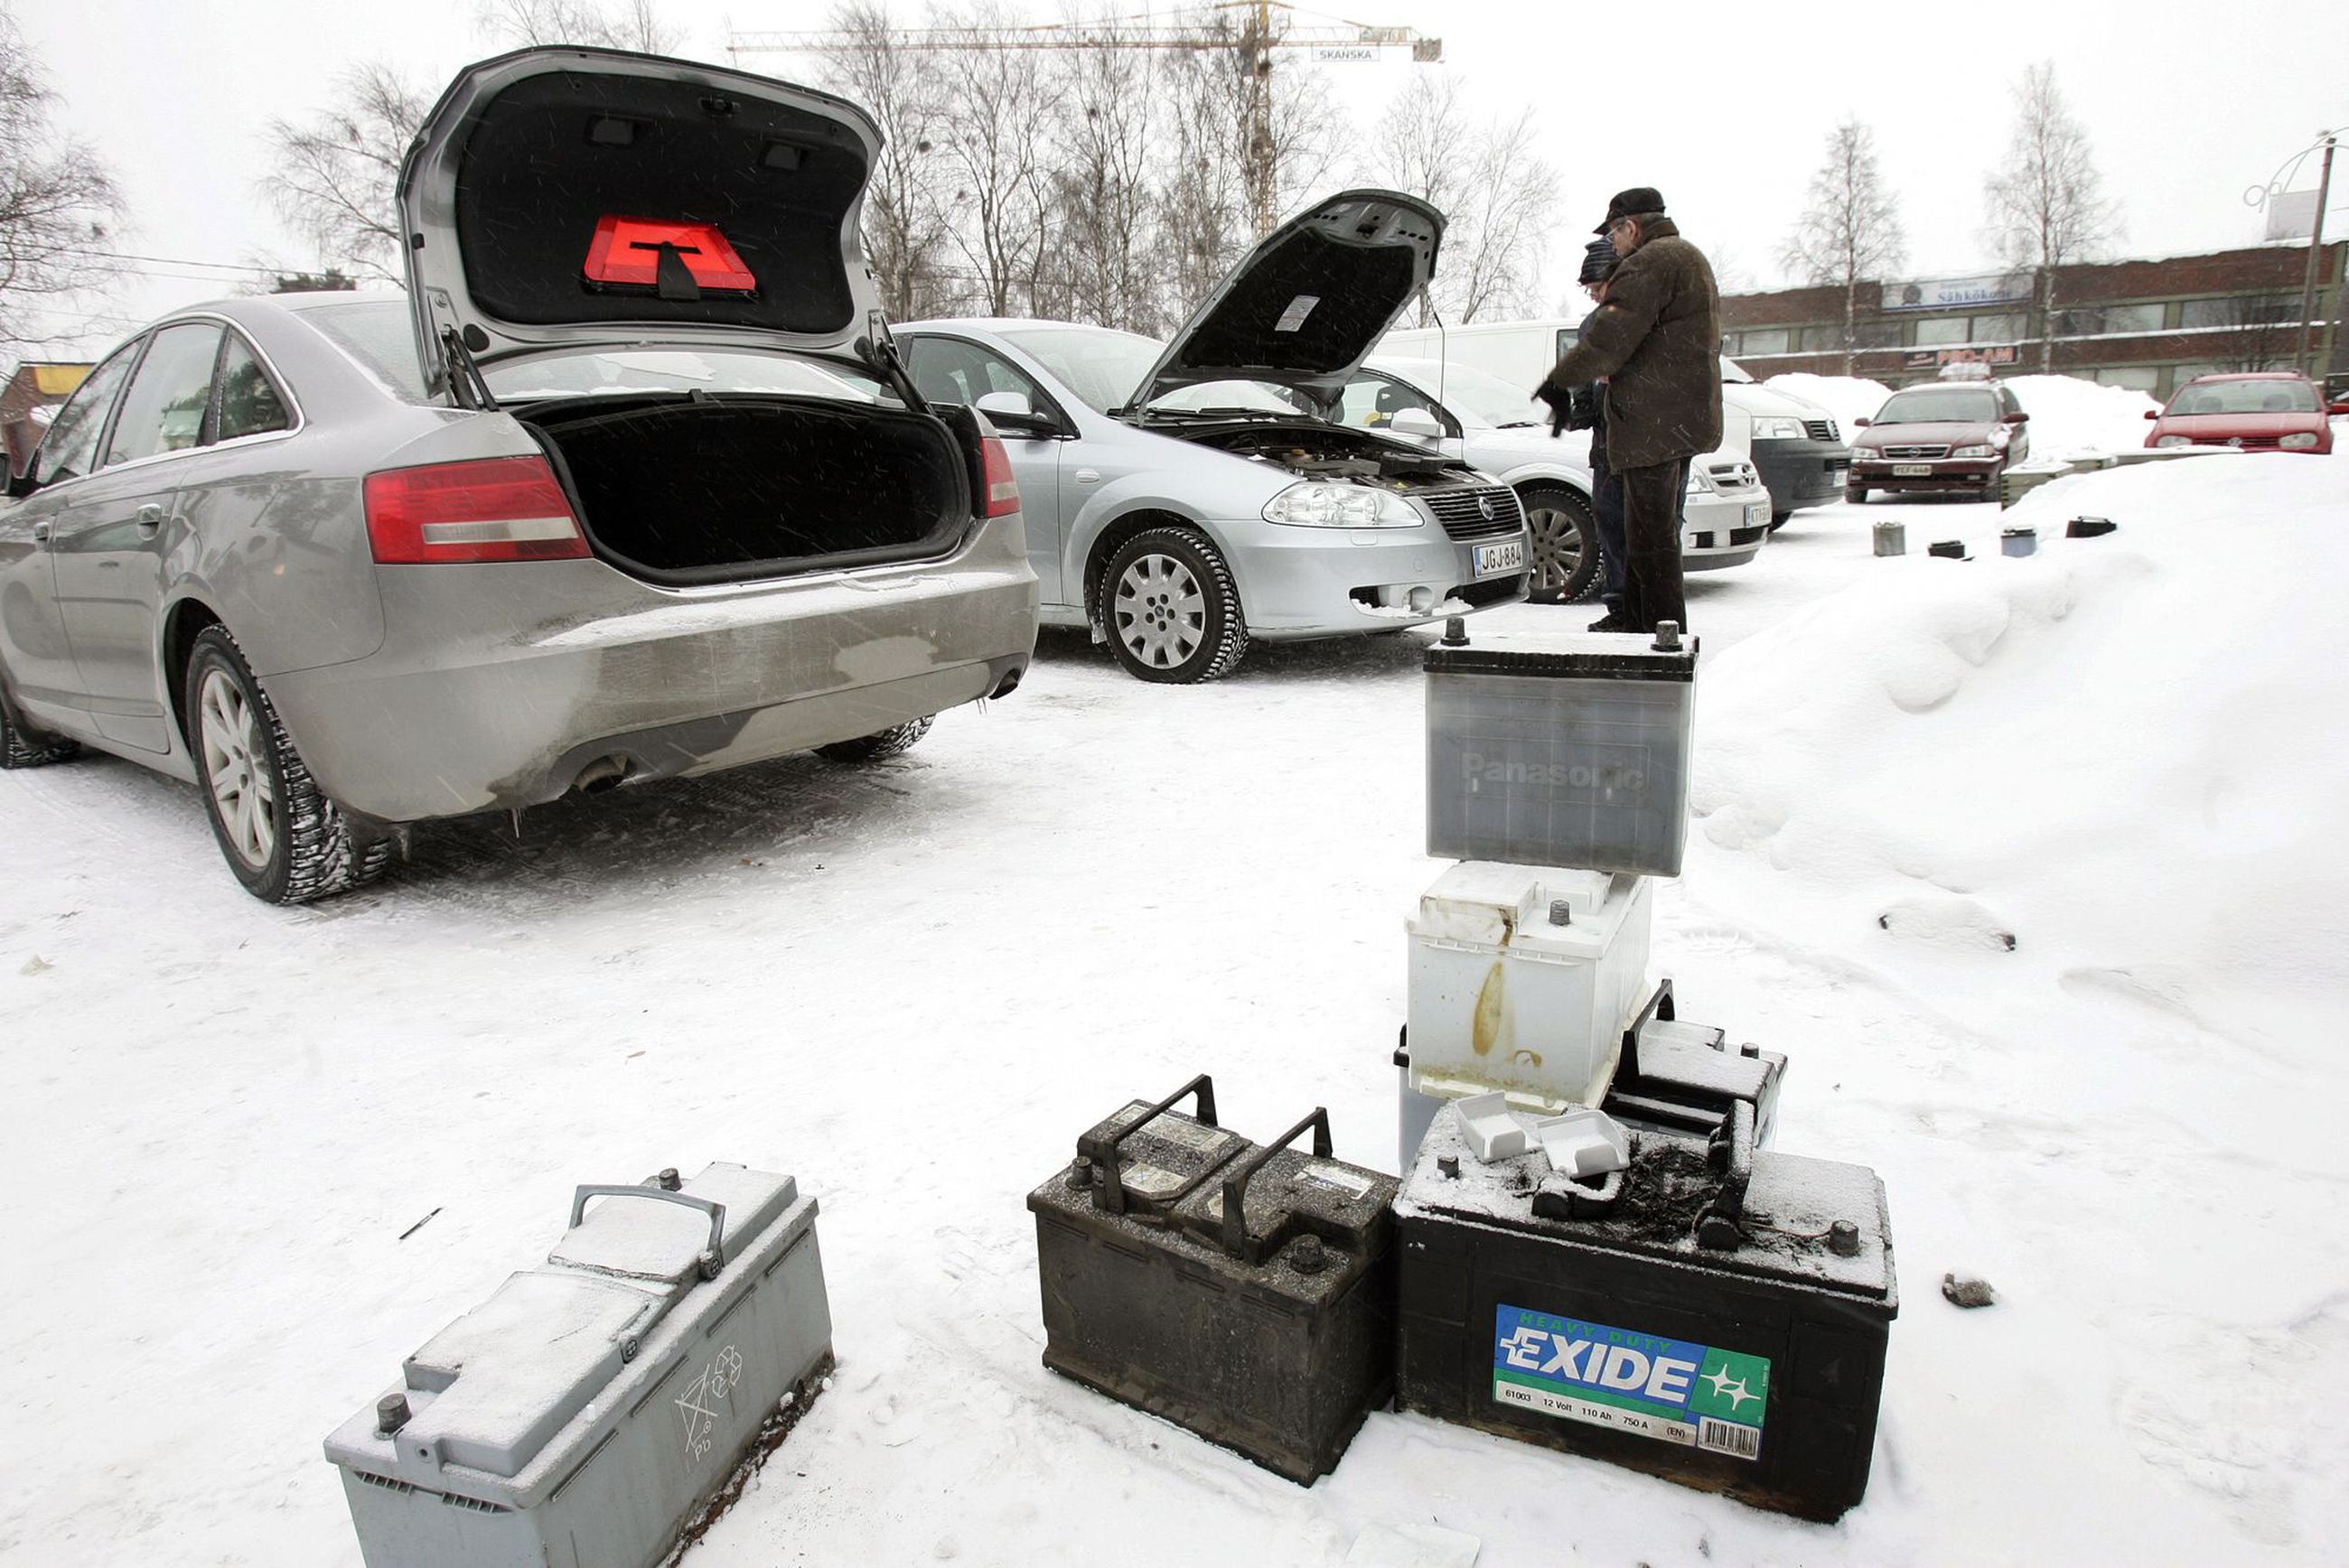 Pig Breakthrough Lying Pakkanen kiristyi talven hyytävimpiin lukemiin Oulussa, kylmä sää jatkuu –  Miten voit estää auton akun hyytymisen? | Kaleva